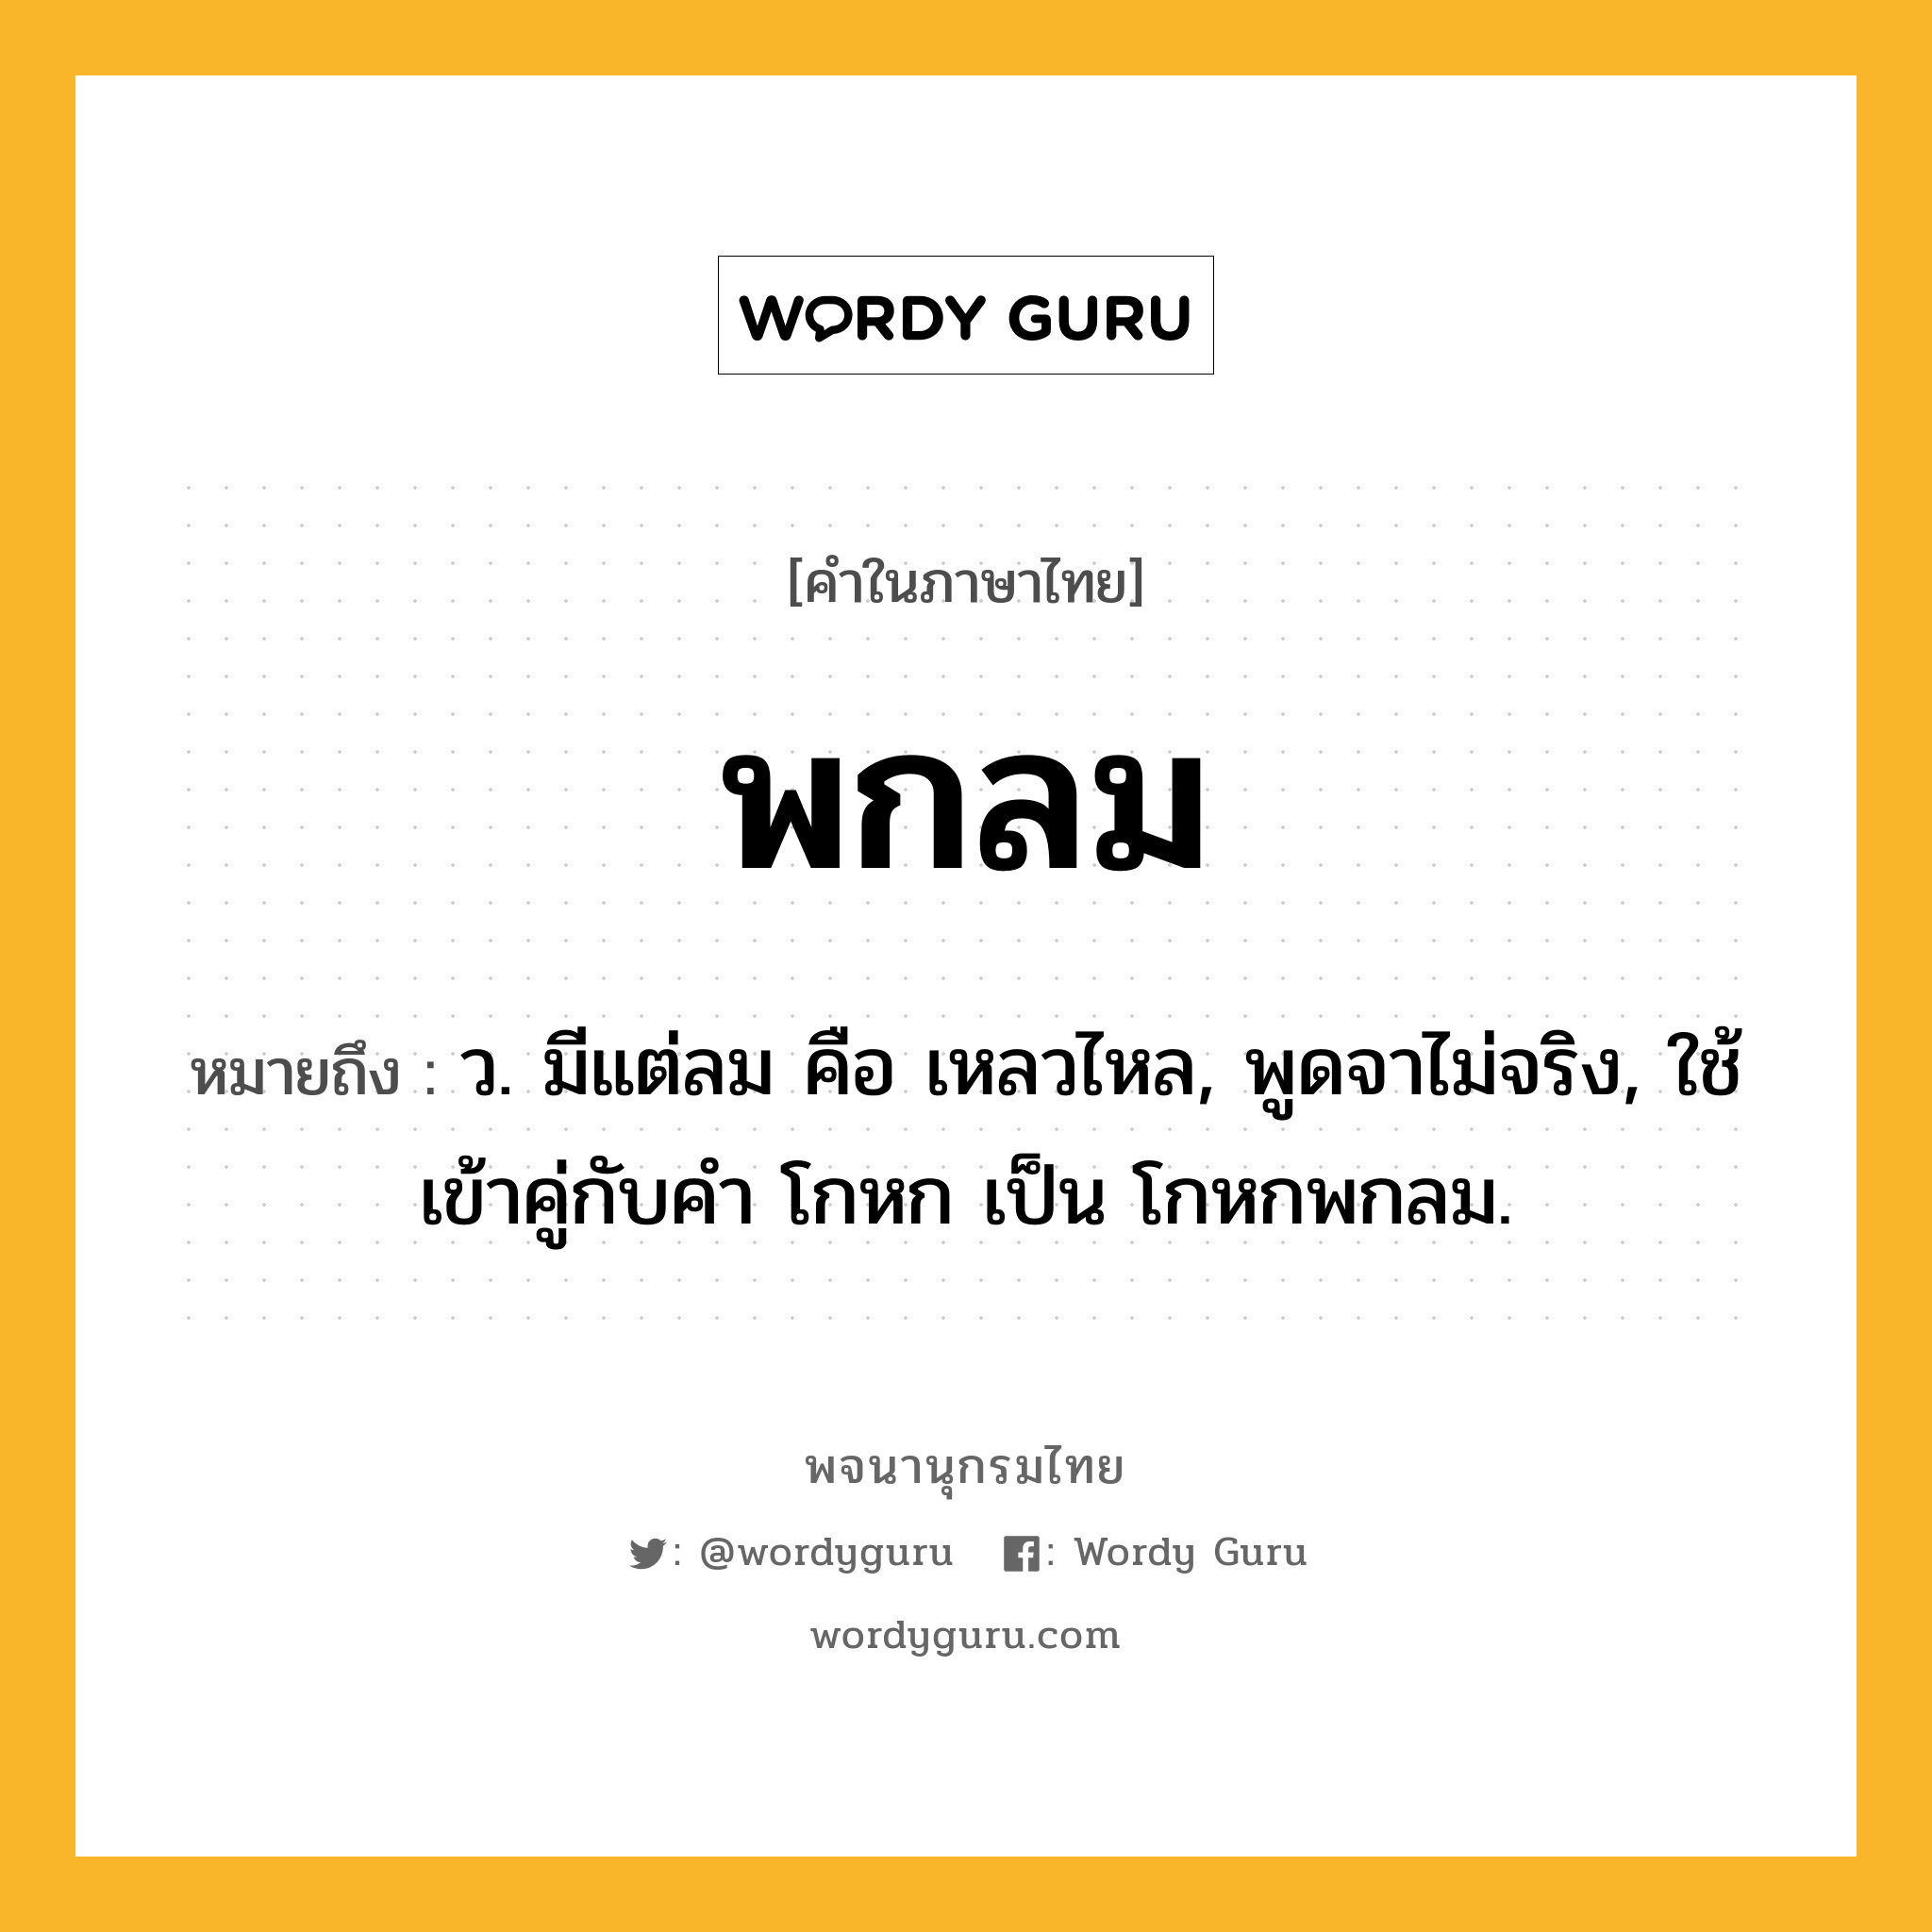 พกลม ความหมาย หมายถึงอะไร?, คำในภาษาไทย พกลม หมายถึง ว. มีแต่ลม คือ เหลวไหล, พูดจาไม่จริง, ใช้เข้าคู่กับคํา โกหก เป็น โกหกพกลม.